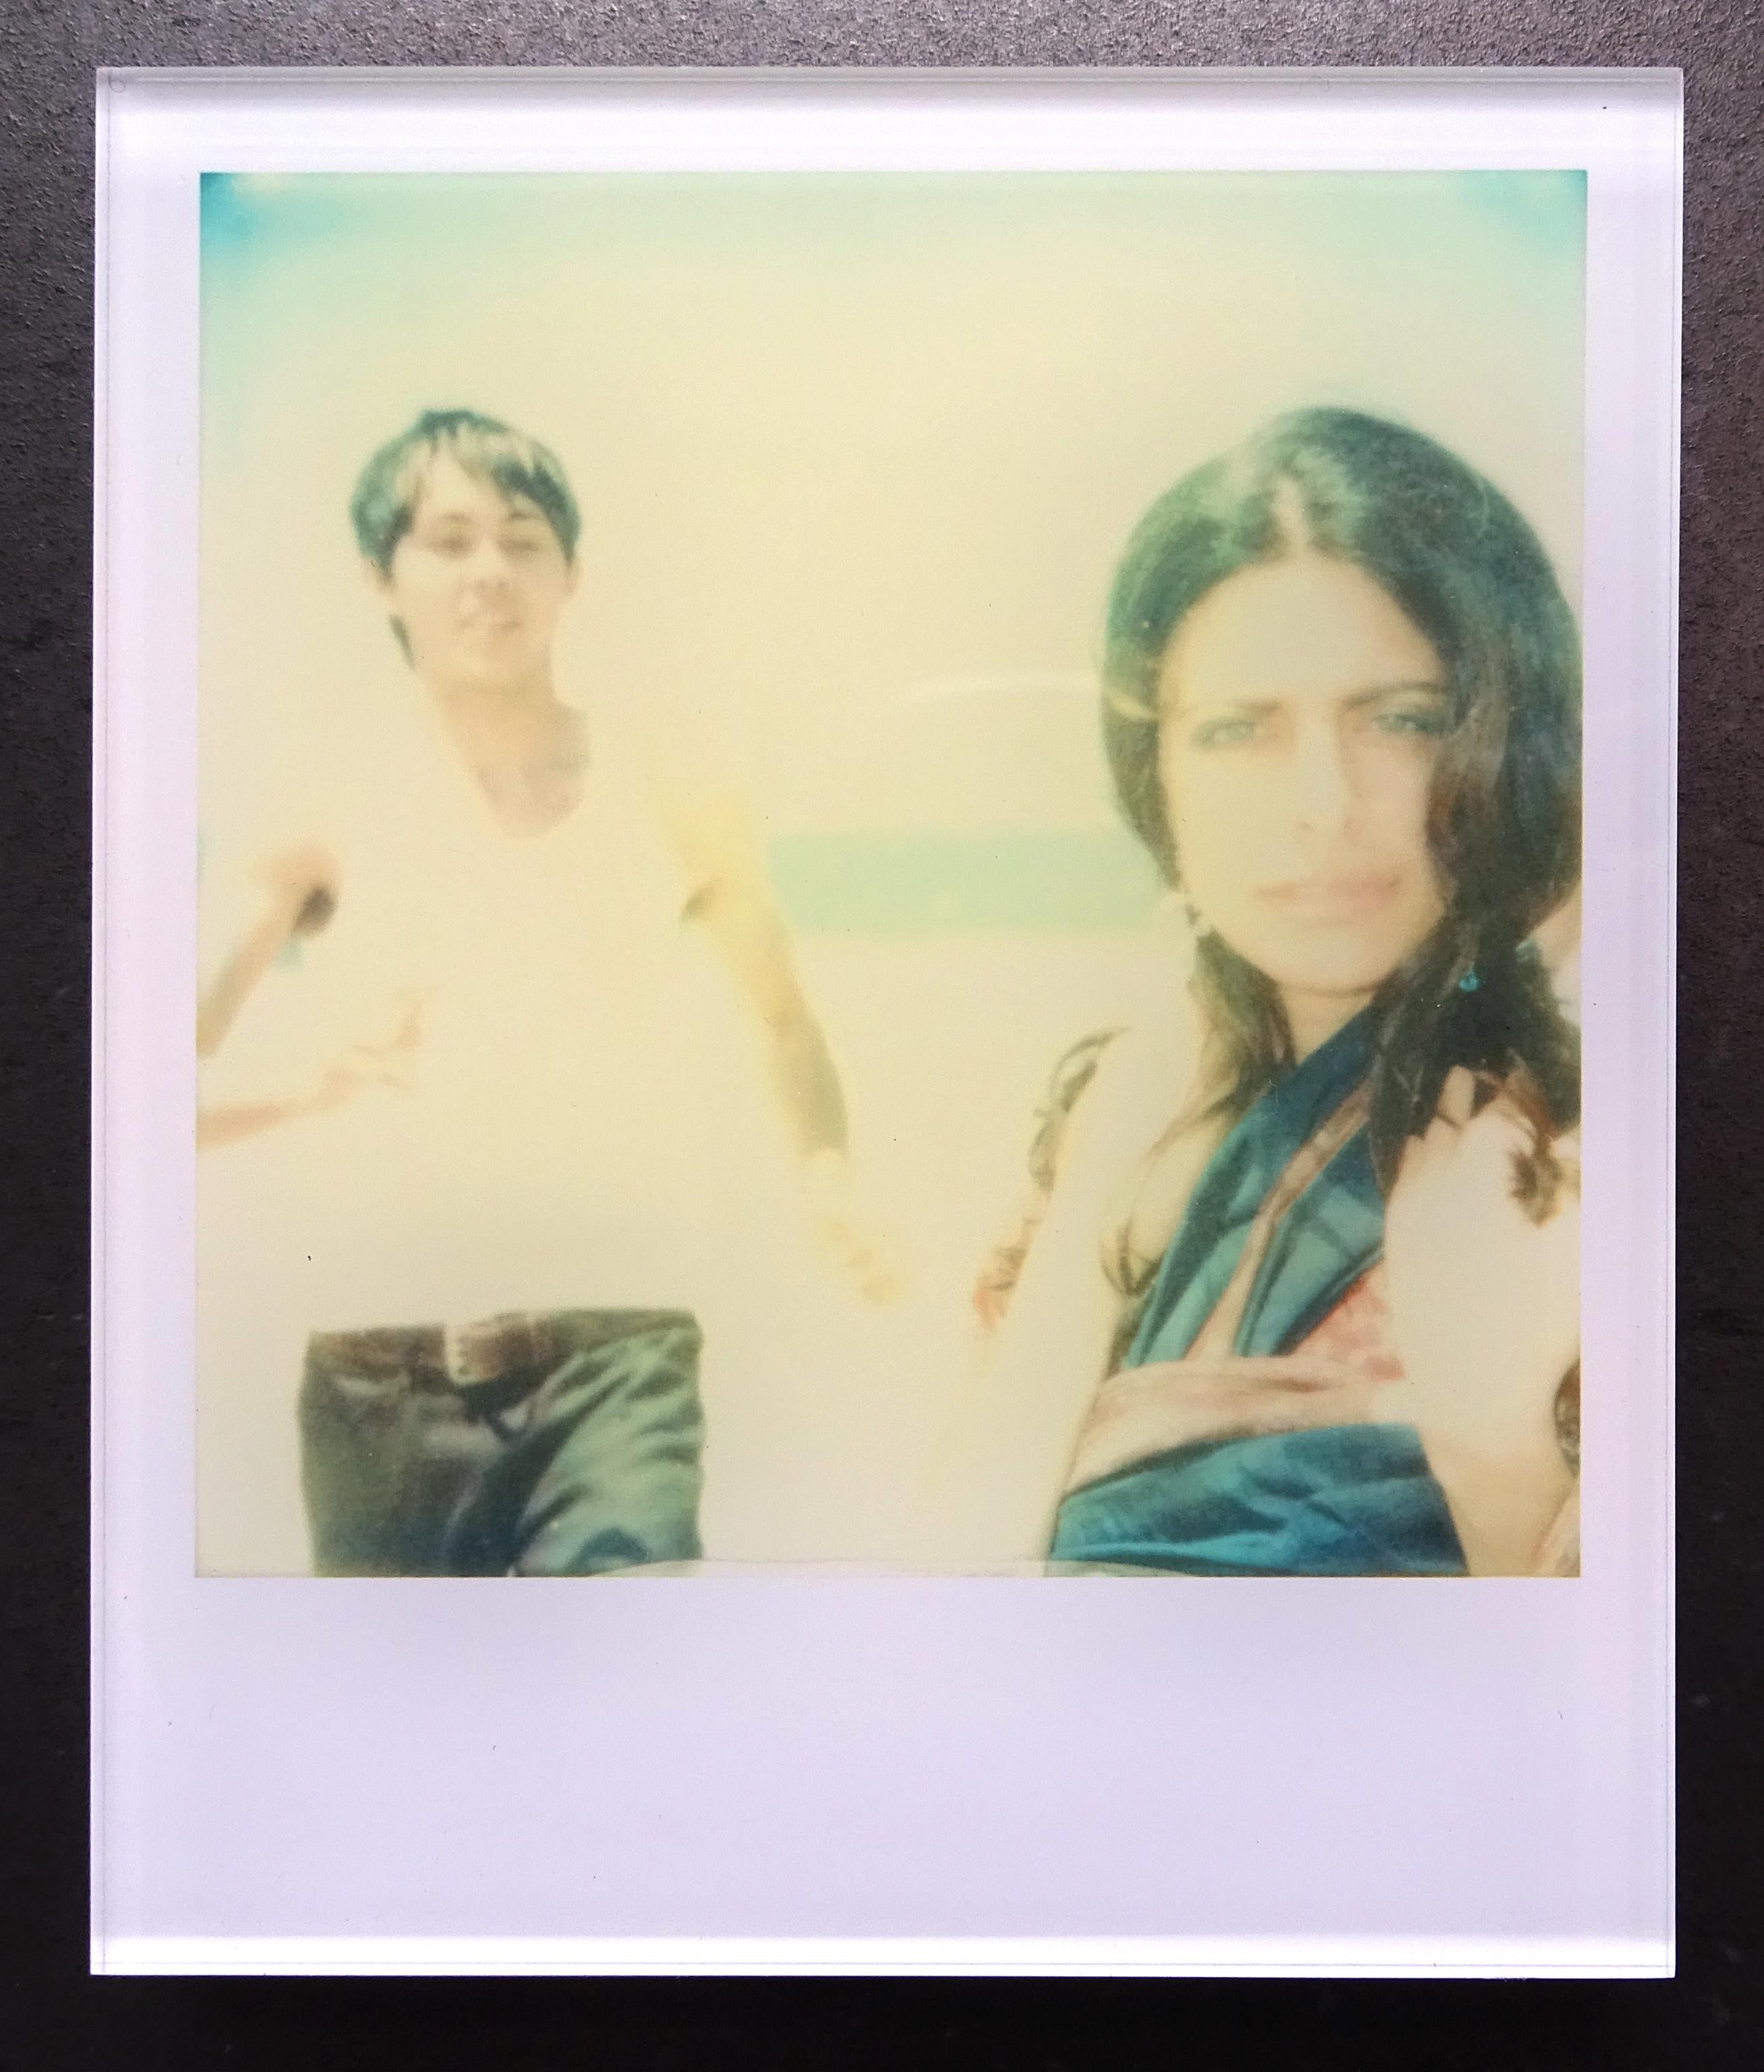 Die Minis von Stefanie Schneider
jules und Jim" (Reneé's Dream - 29 Palms, CA), 2007
verso signiert und Signaturmarke
Digitale Lambda-Farbfotografien auf der Grundlage eines Polaroids

Offene Editionen in Polaroidgröße 1999-2013
10.7 x 8,8cm (Bild